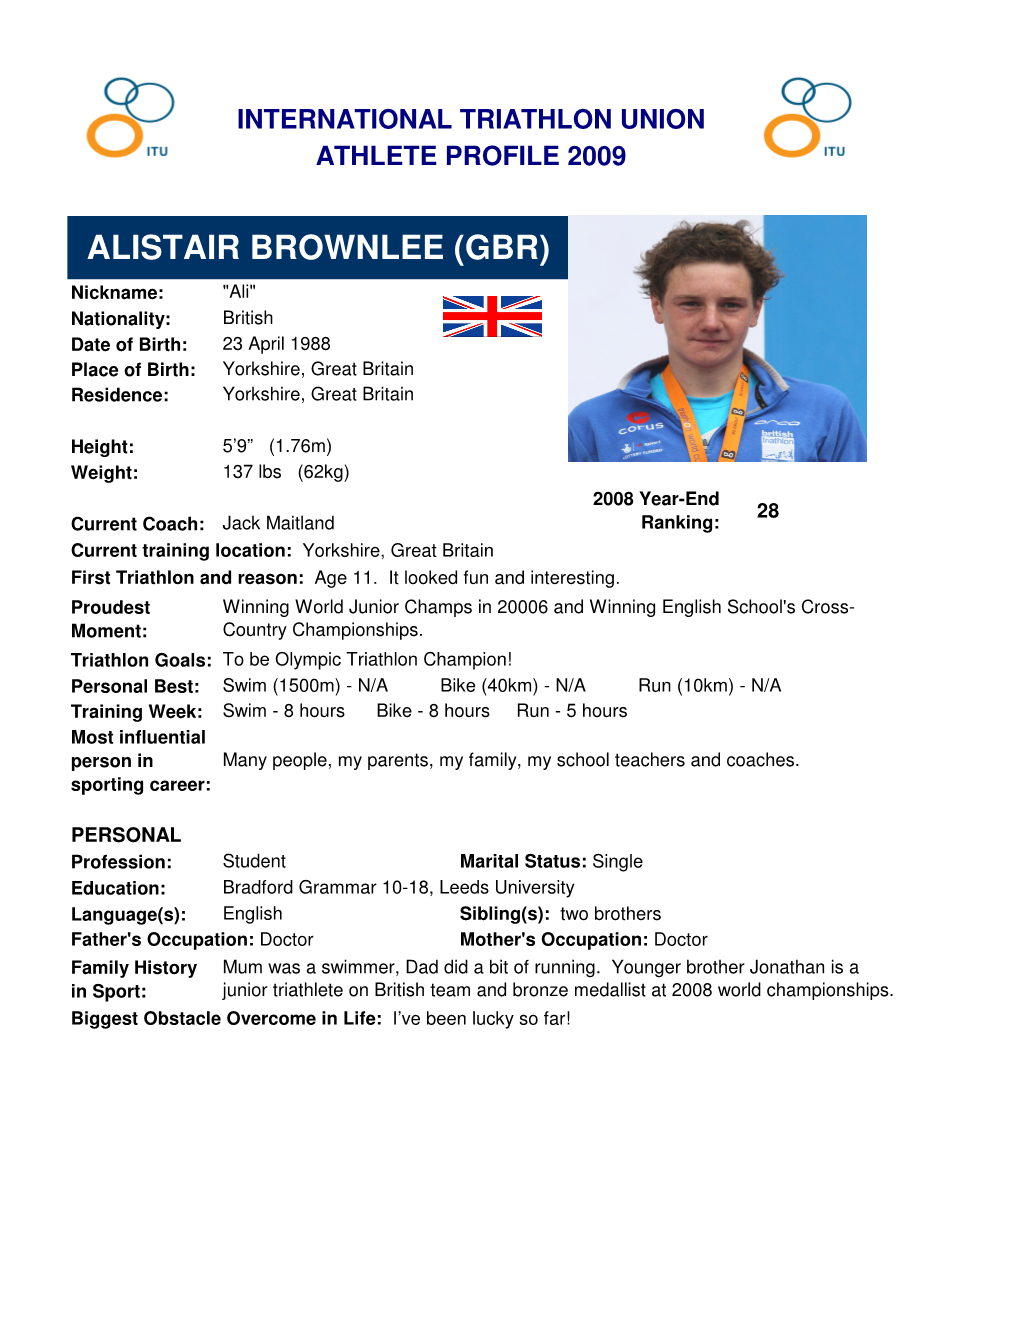 Alistair Brownlee Profile